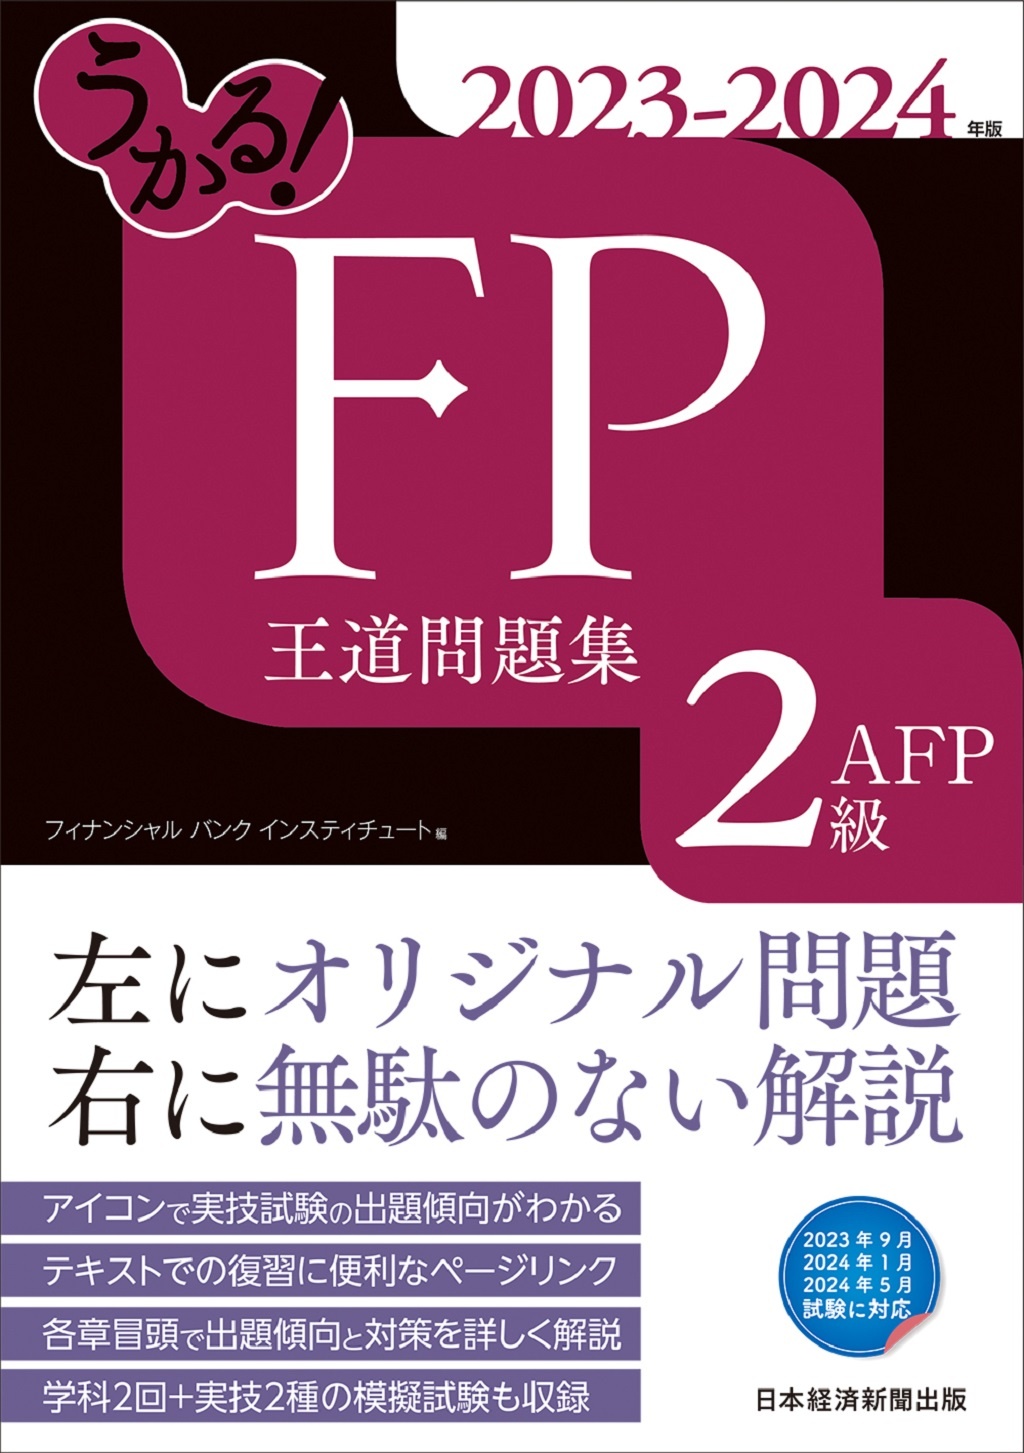 うかる！ FP2級・AFP 王道問題集 2023-2024年版